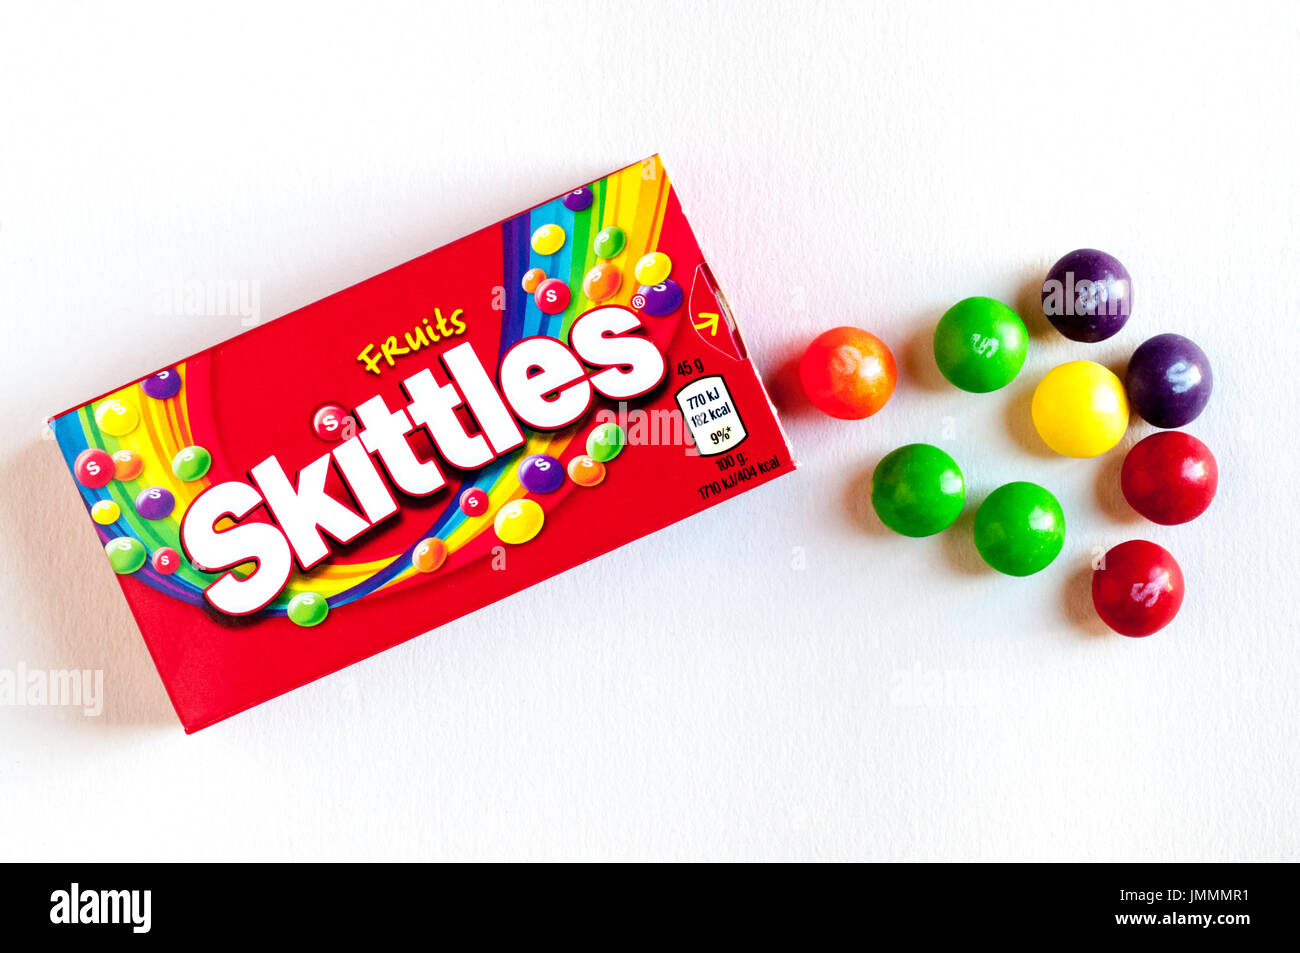 Ein Feld von Skittles Süssigkeiten, von Wrigley, einem Geschäftsbereich von Mars Inc. Stockfoto